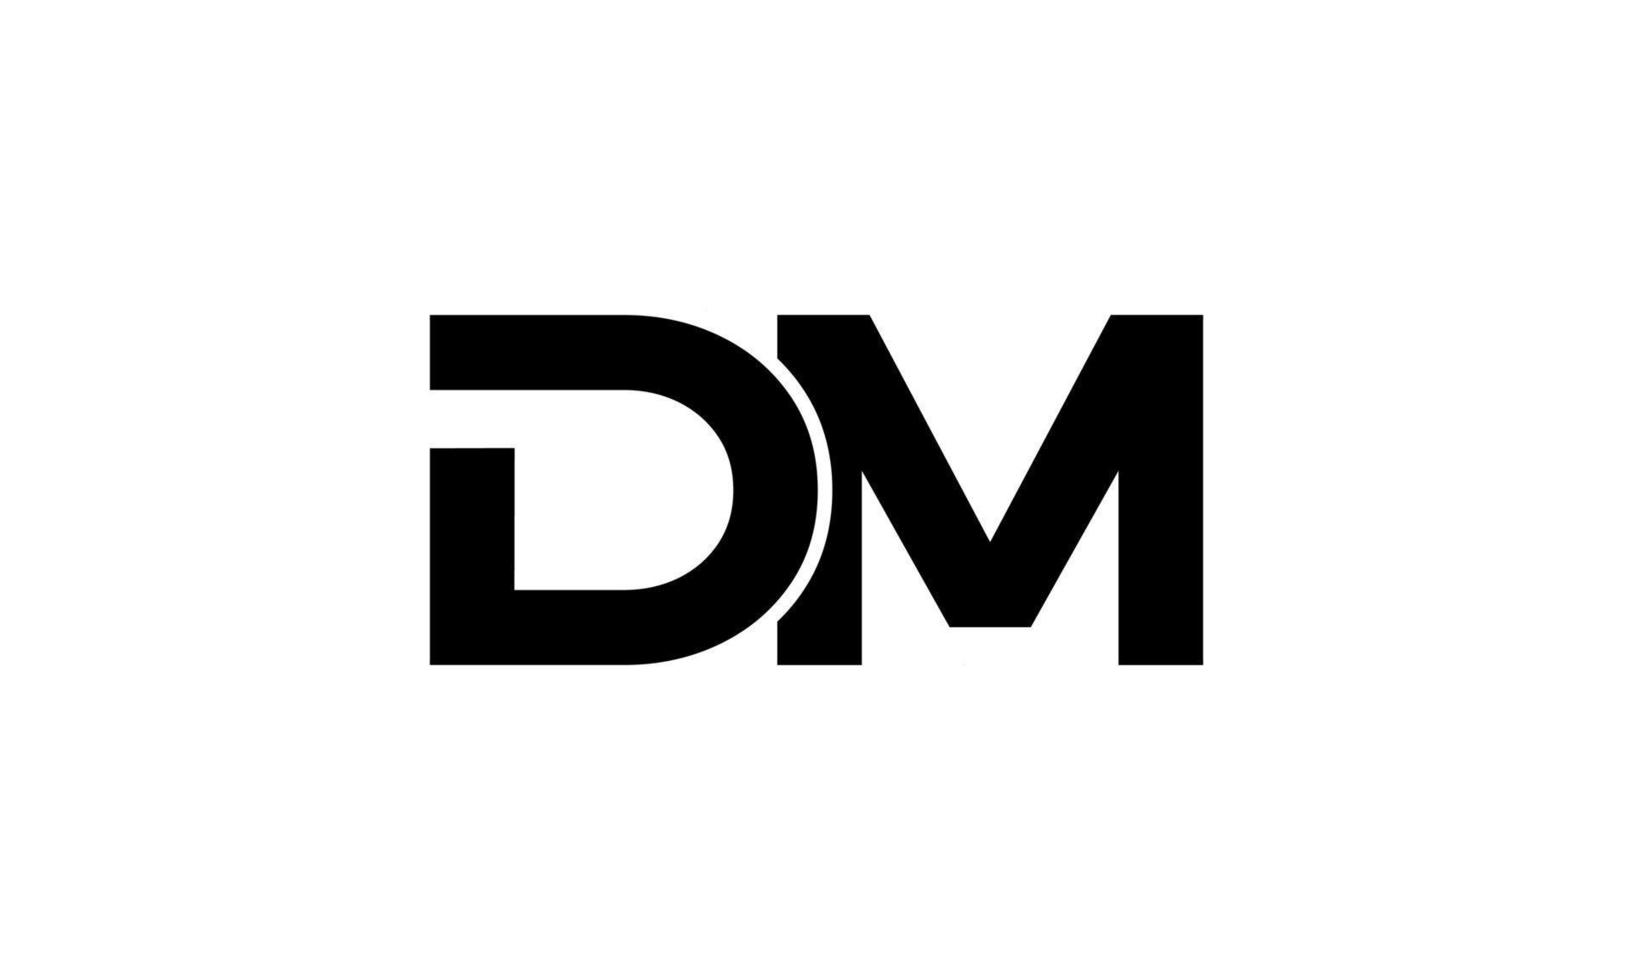 dm design de logotipo. letra dm inicial design de logotipo monograma vector design pro vector.